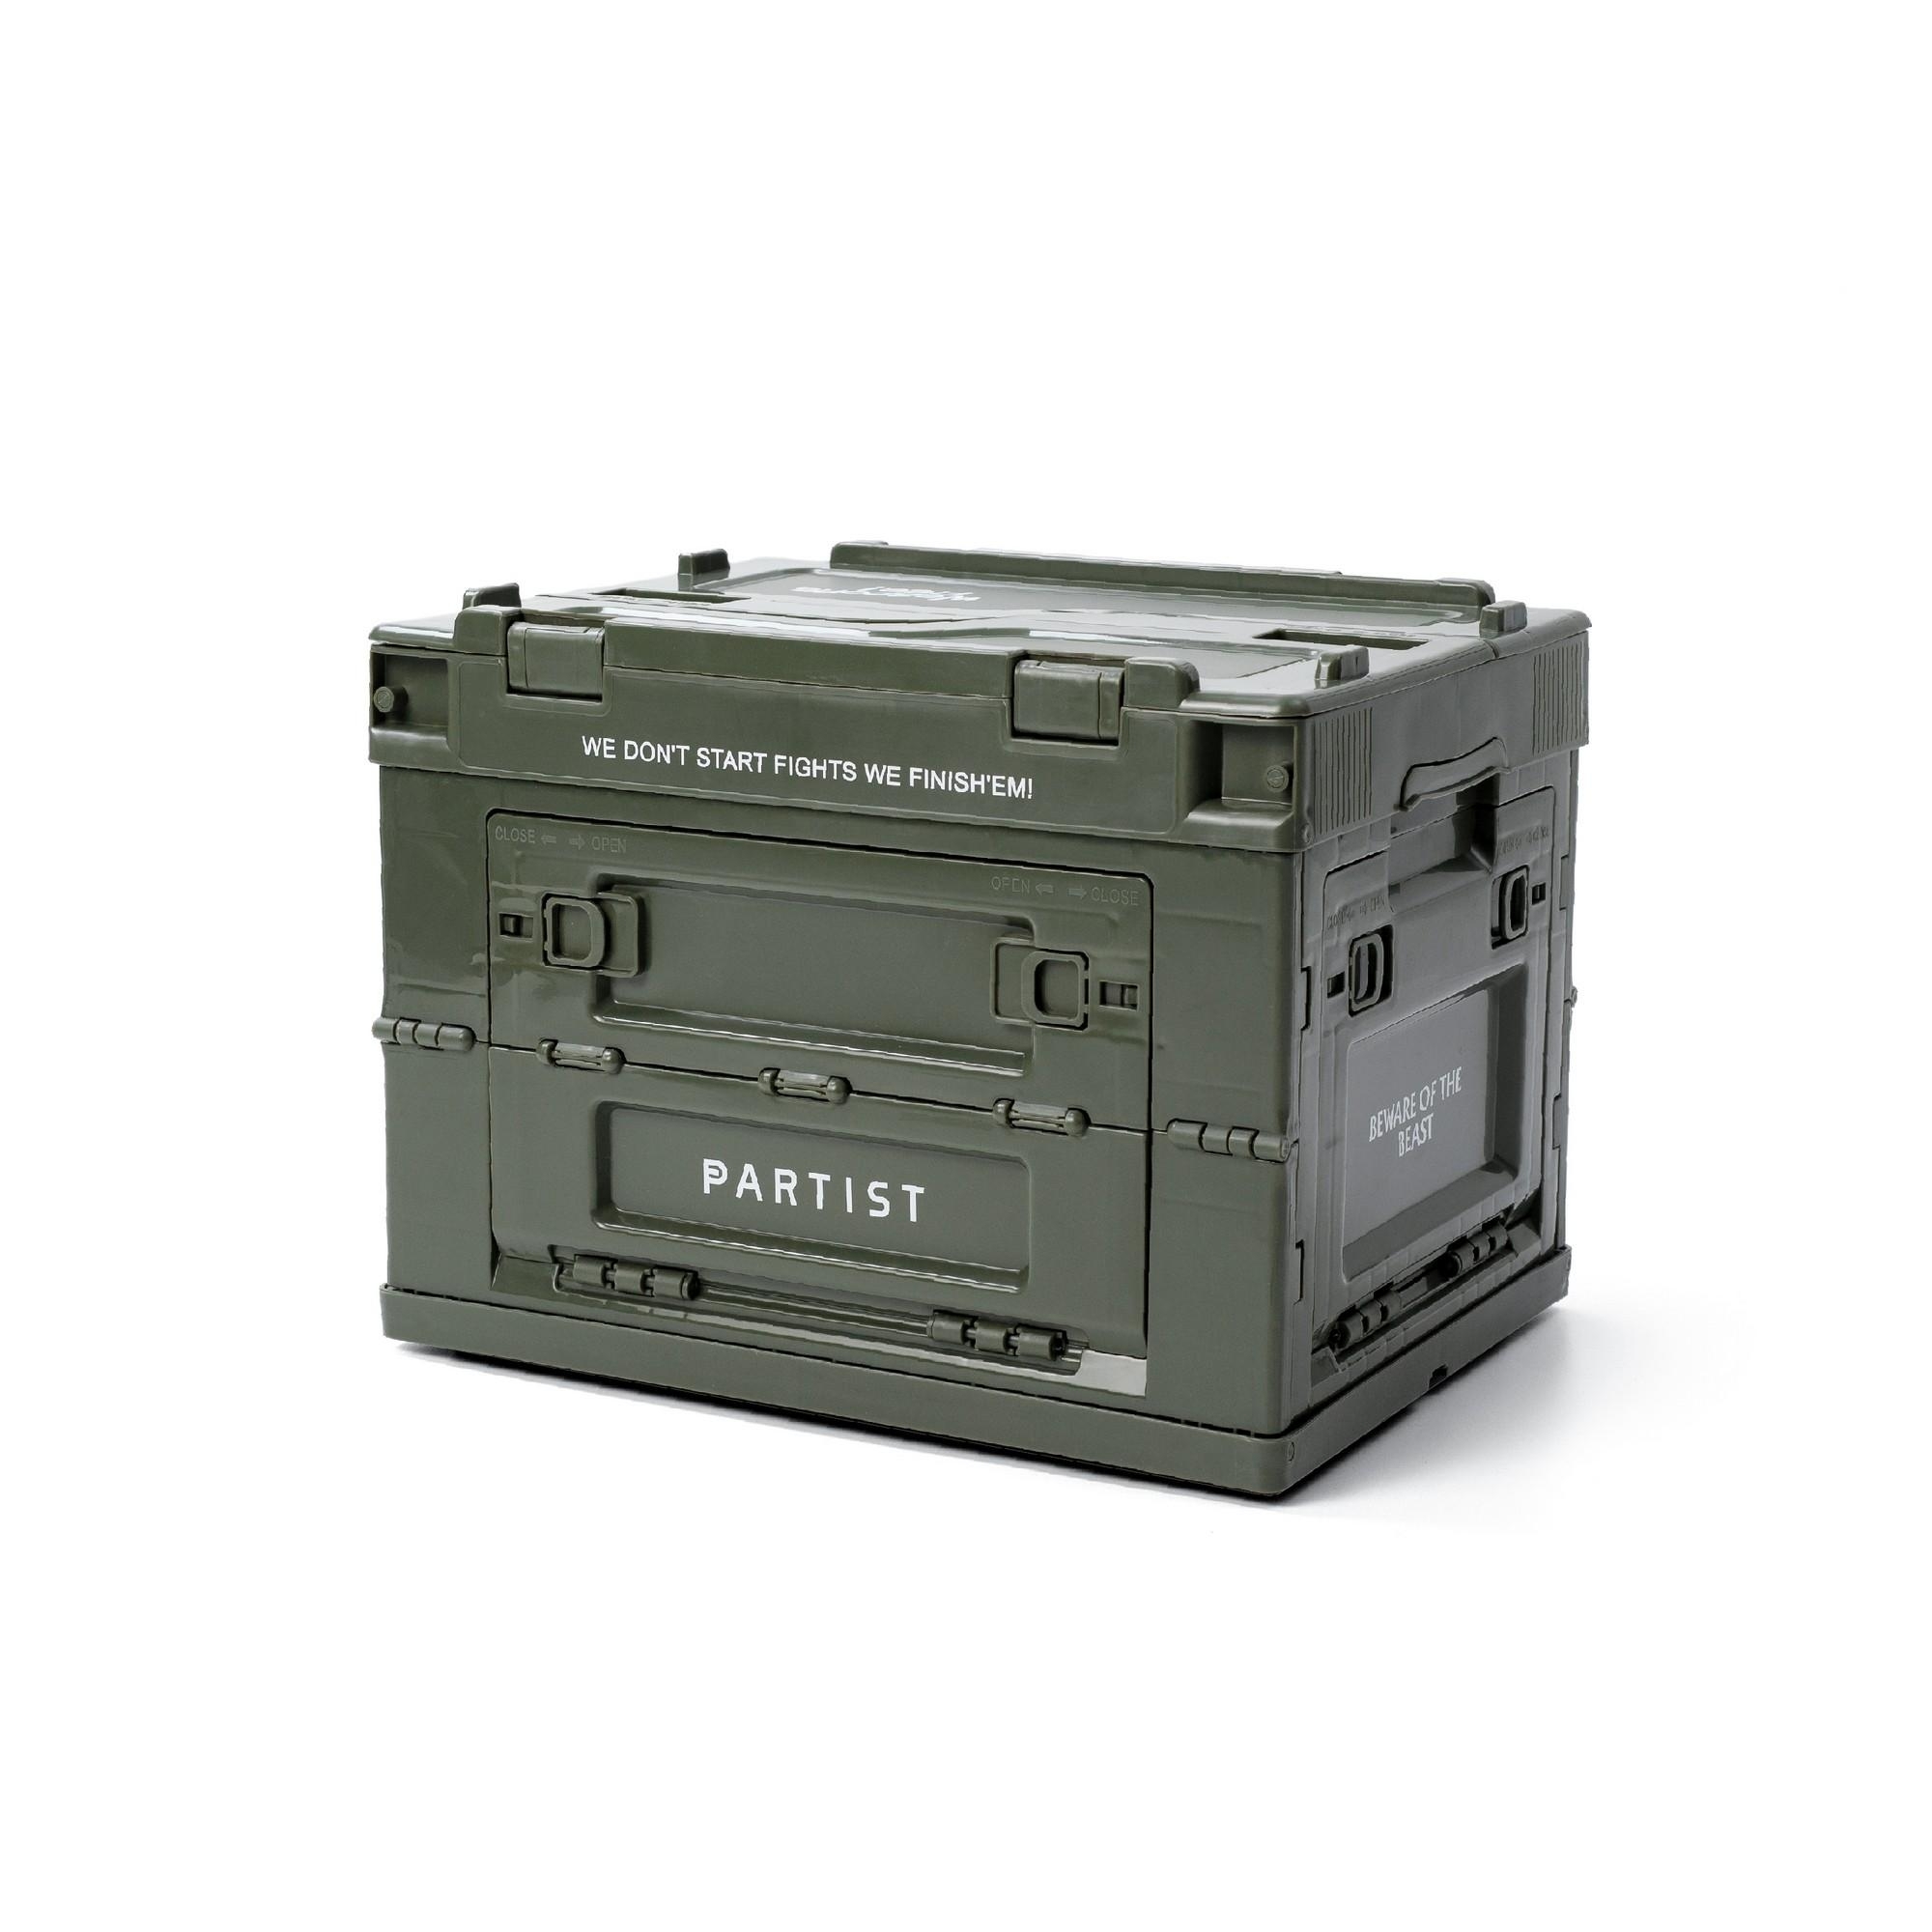 FILTER017® X DARK FOREST #9292 Portable Folding Storage 